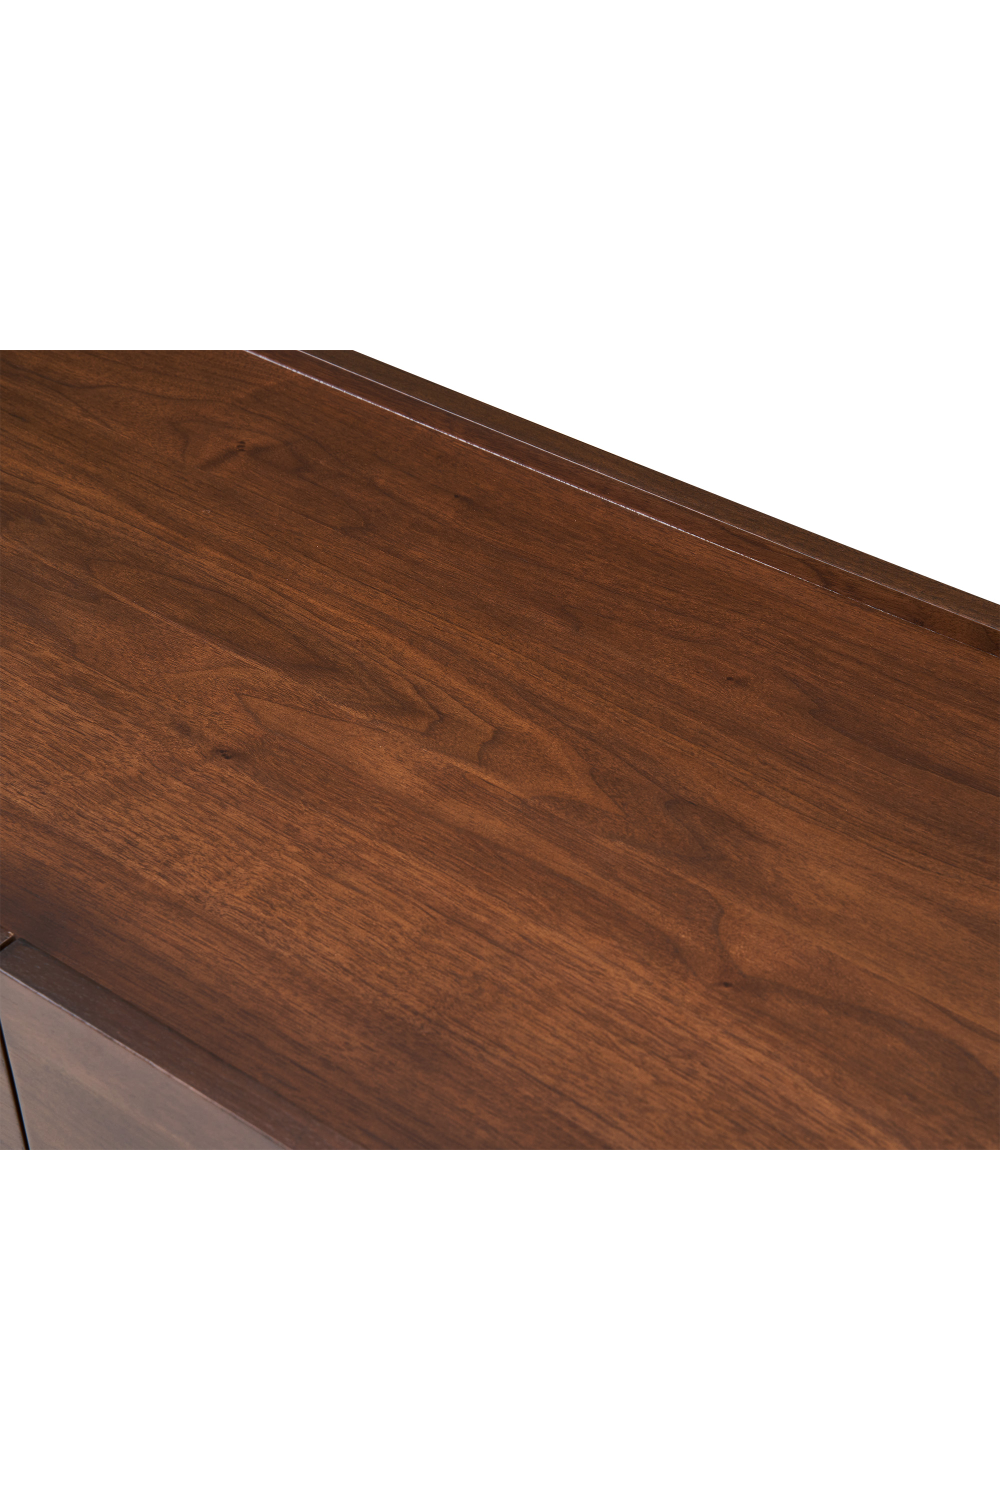 Modern Wood Sideboard | Liang & Eimil Butka | Oroa.com